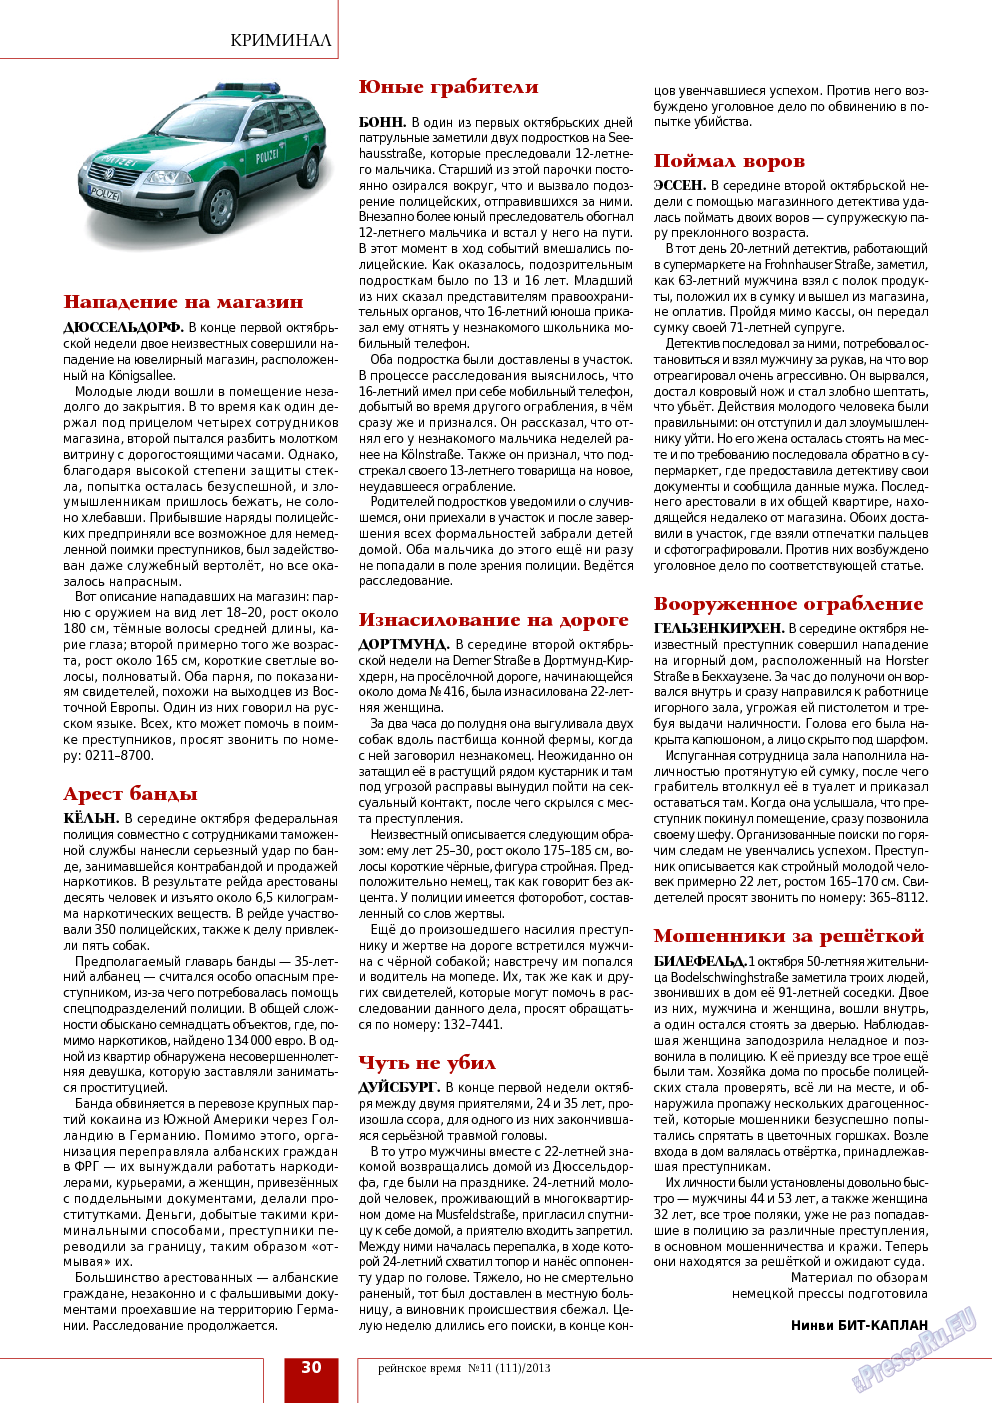 Рейнское время, журнал. 2013 №11 стр.30